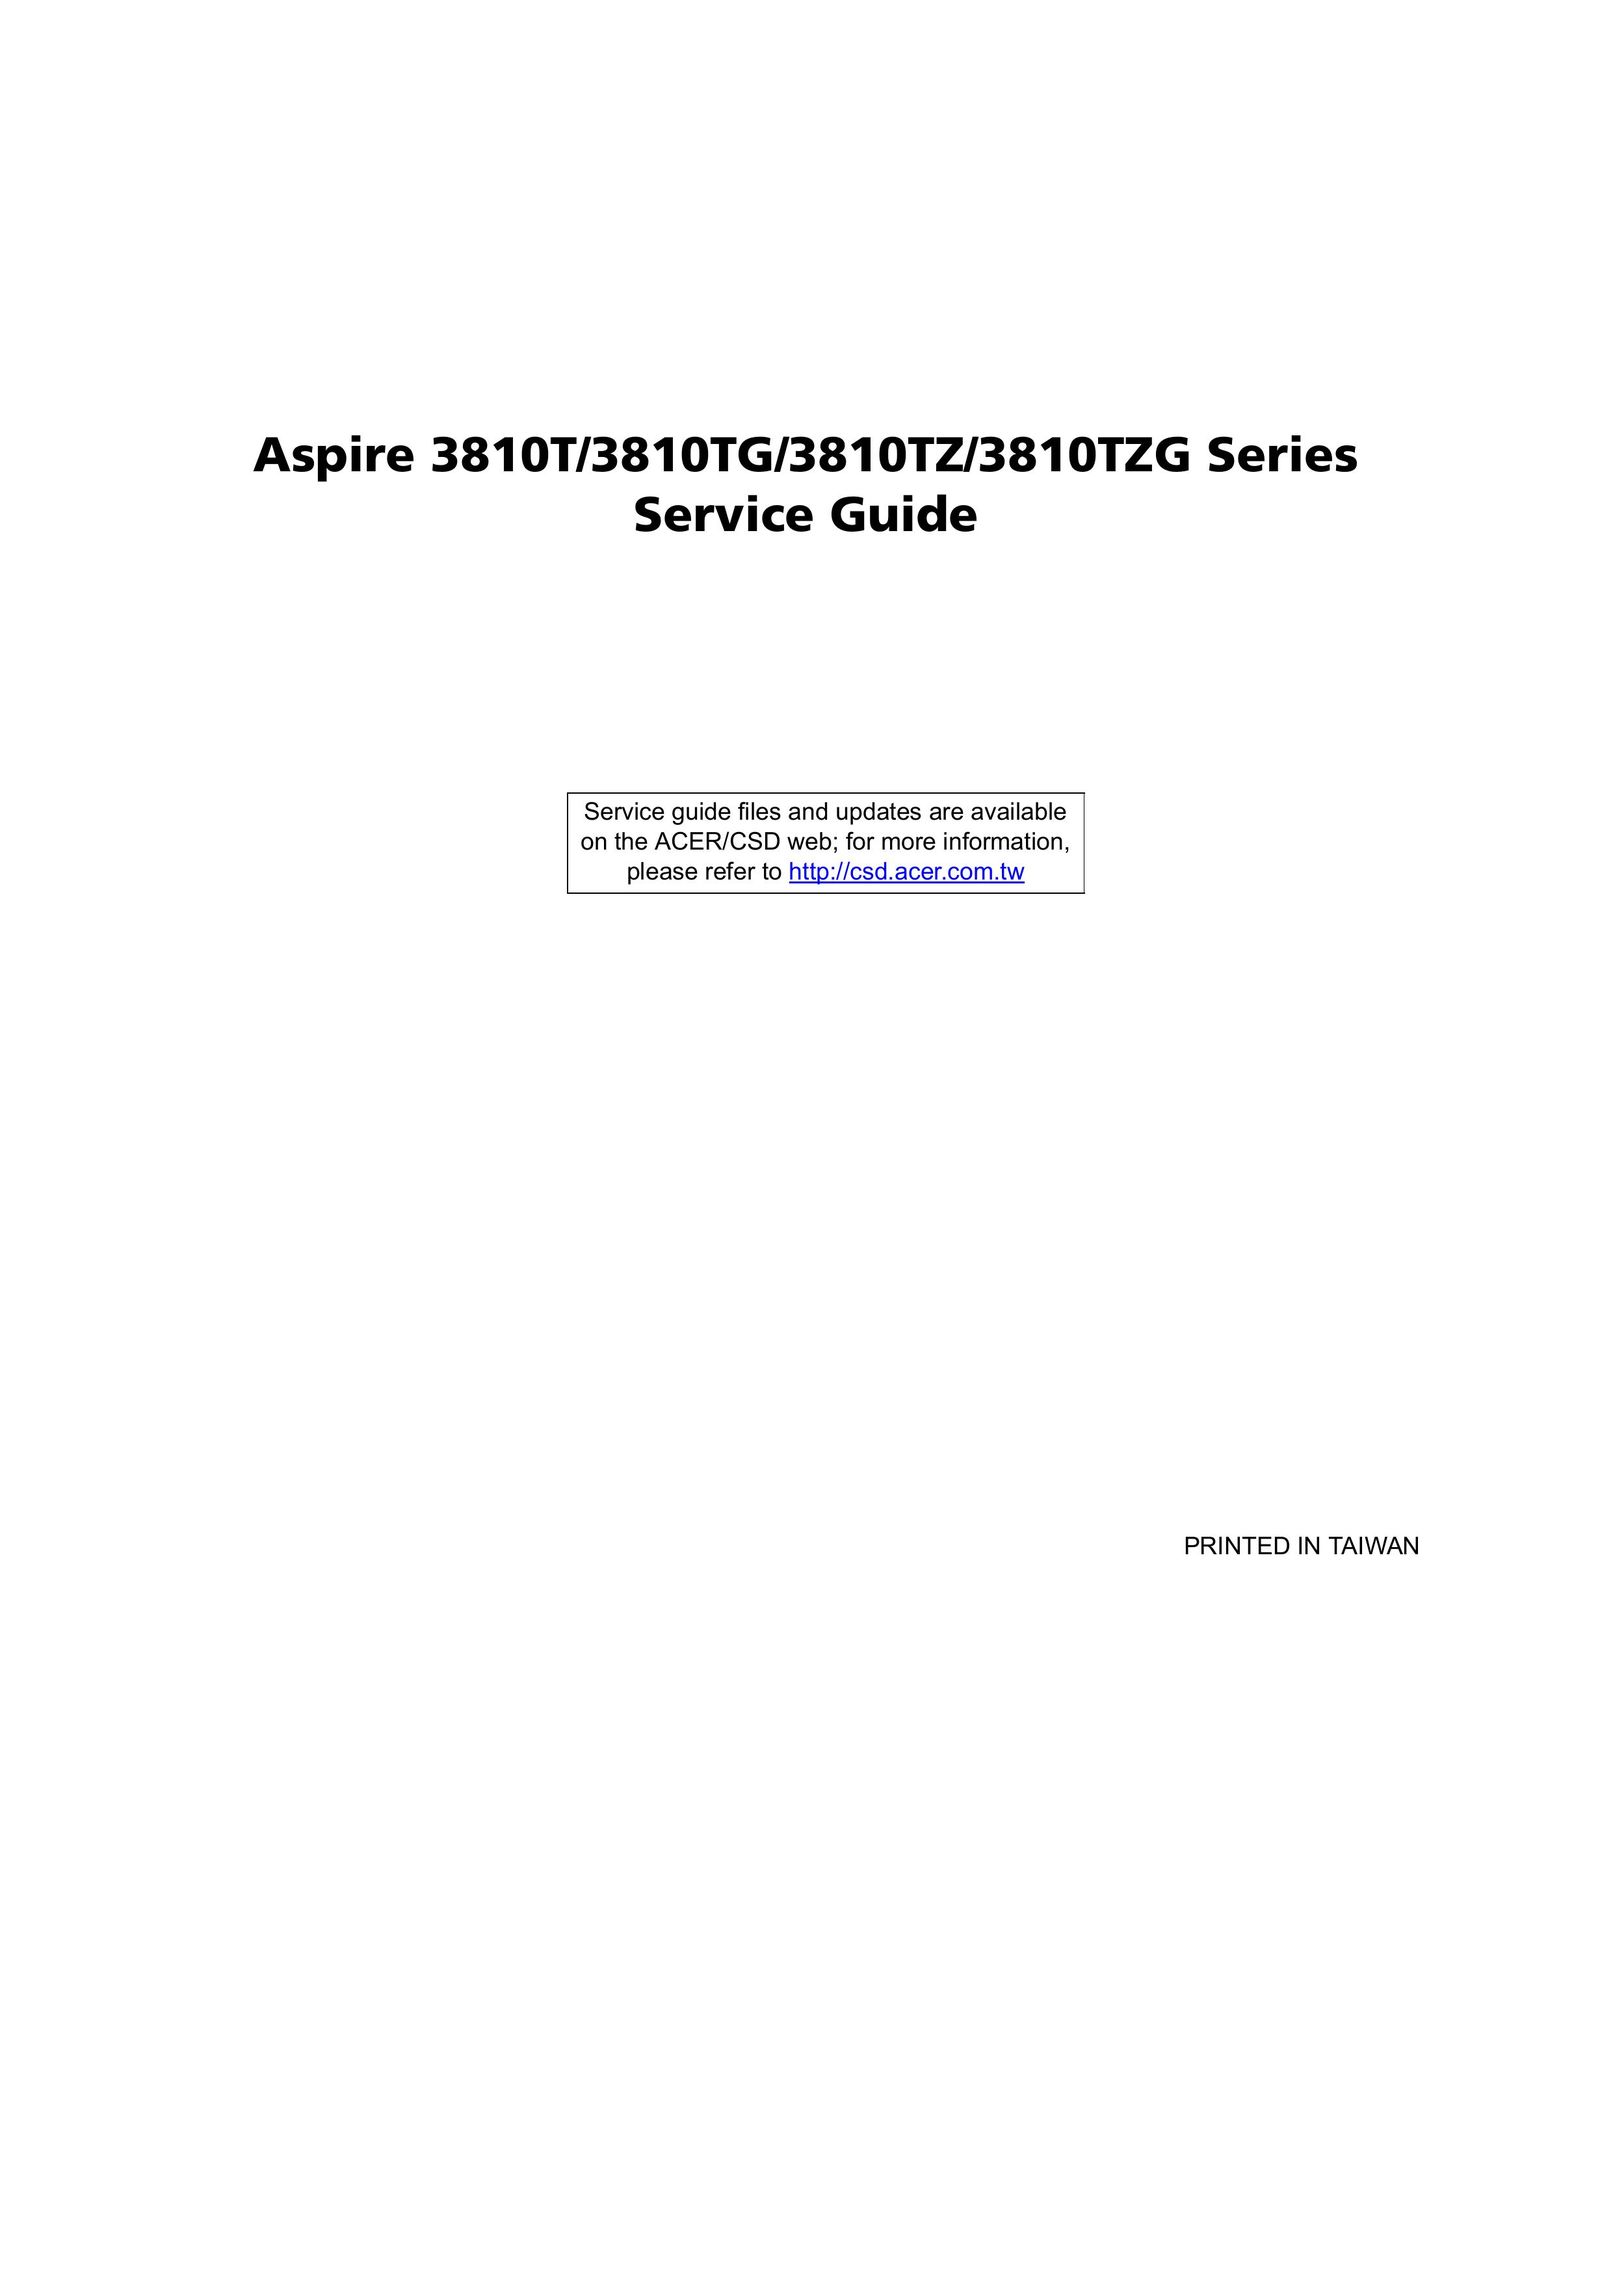 Aspire Digital 3810TG Personal Computer User Manual